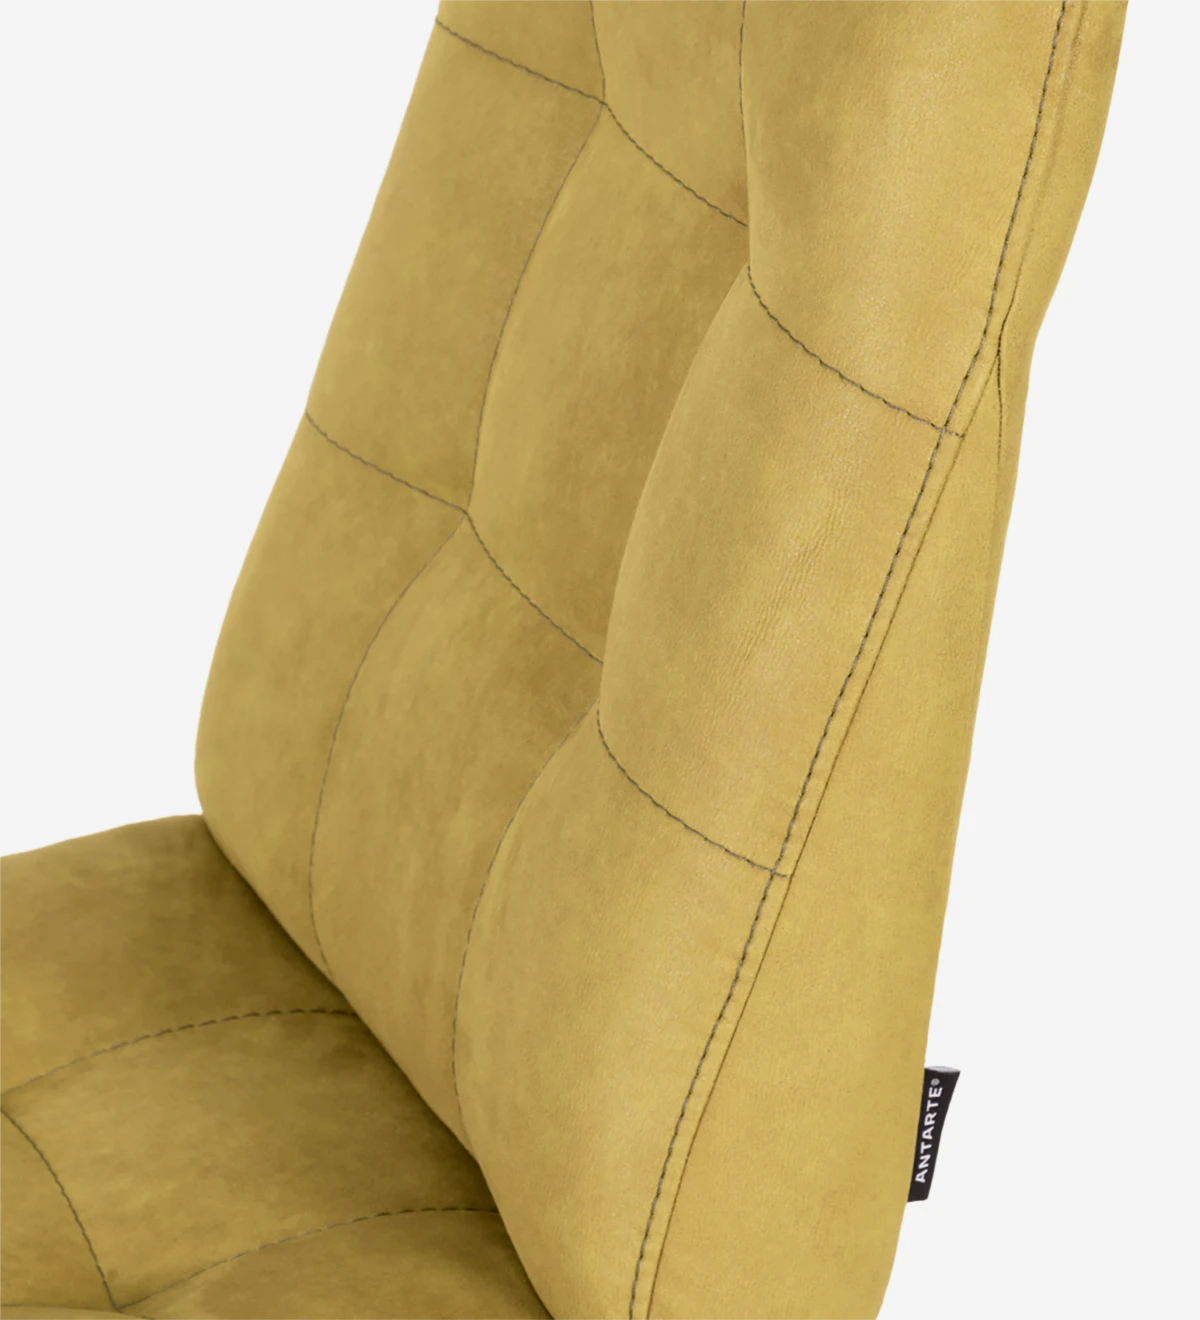 Silla tapizada en tejido, con pies metálicos lacados en dorado.